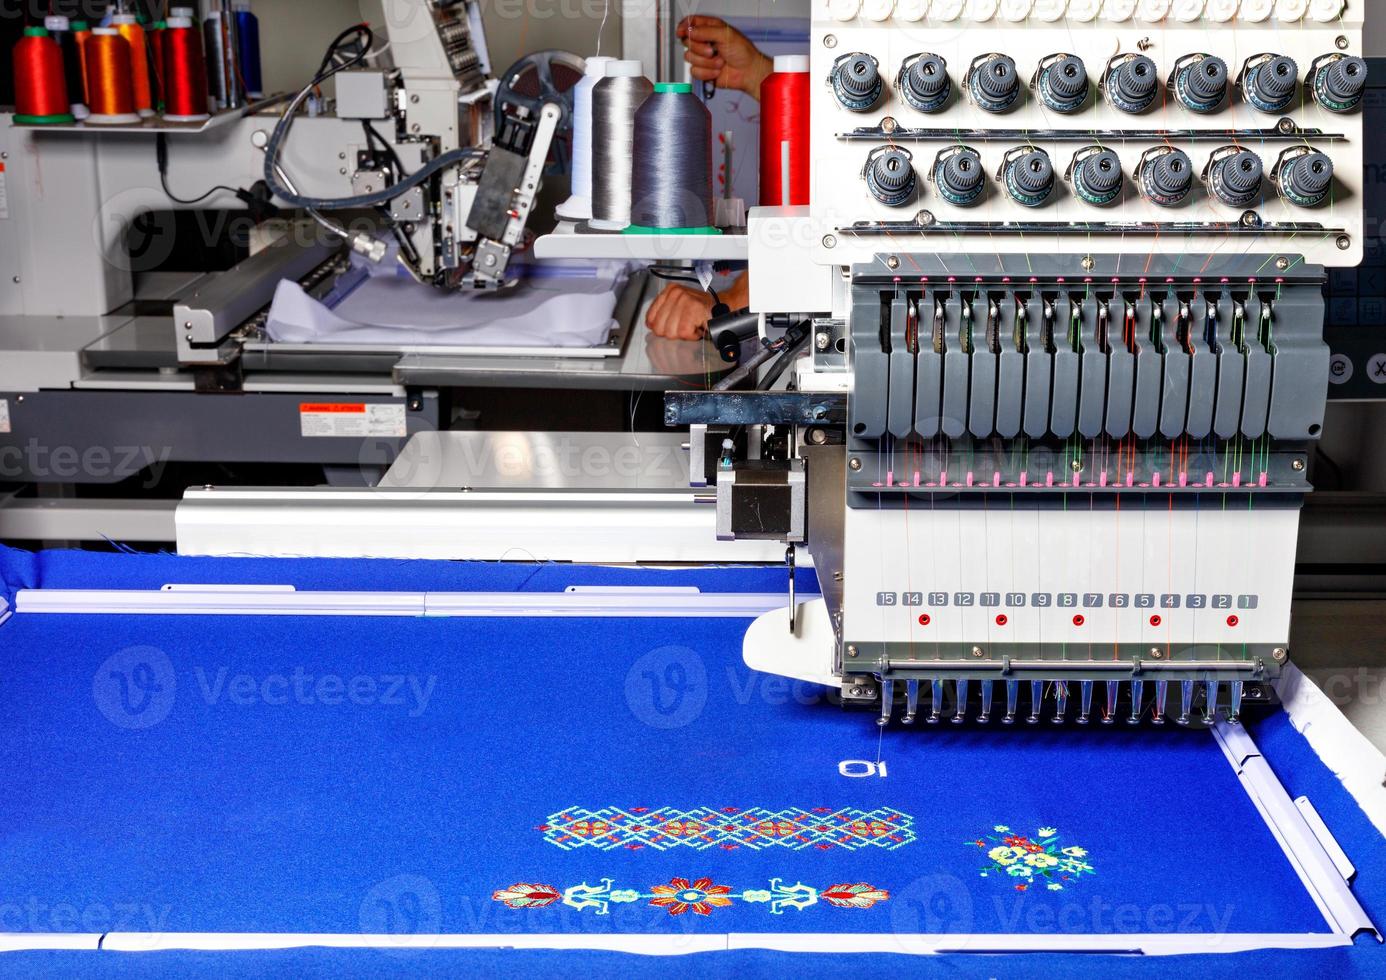 industriell broderimaskin med flerfärgade trådar på jobbet, närbild, kopieringsutrymme. foto